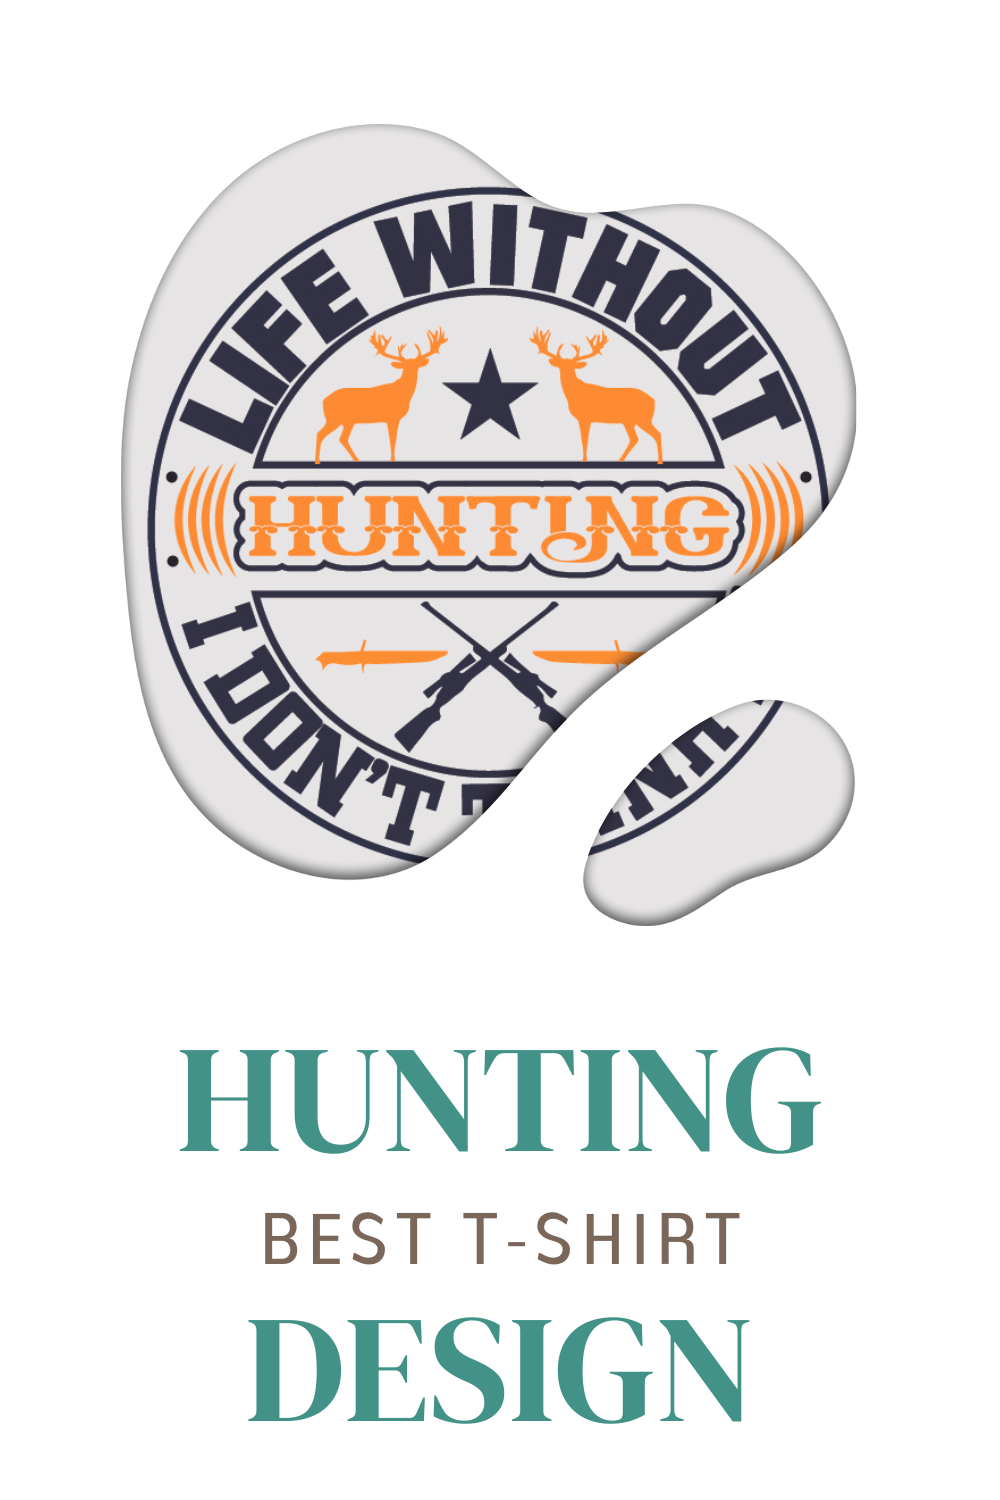 T-shirt Hunting Design Bundle pinterest image.